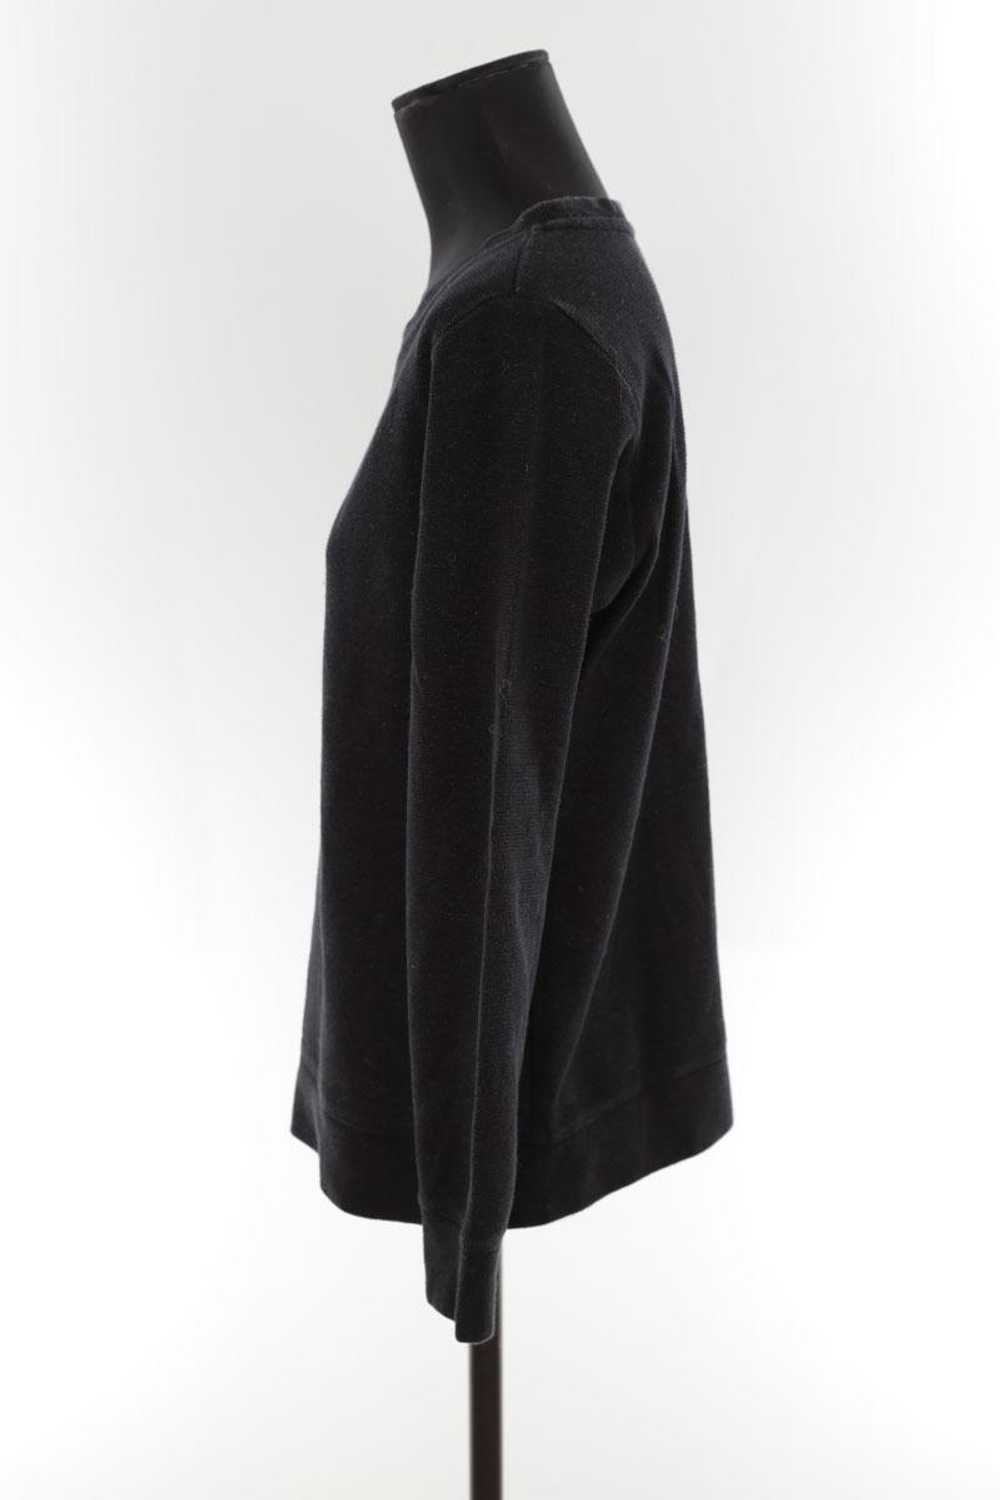 Circular Clothing Pull-over en coton APC noir. Ma… - image 3